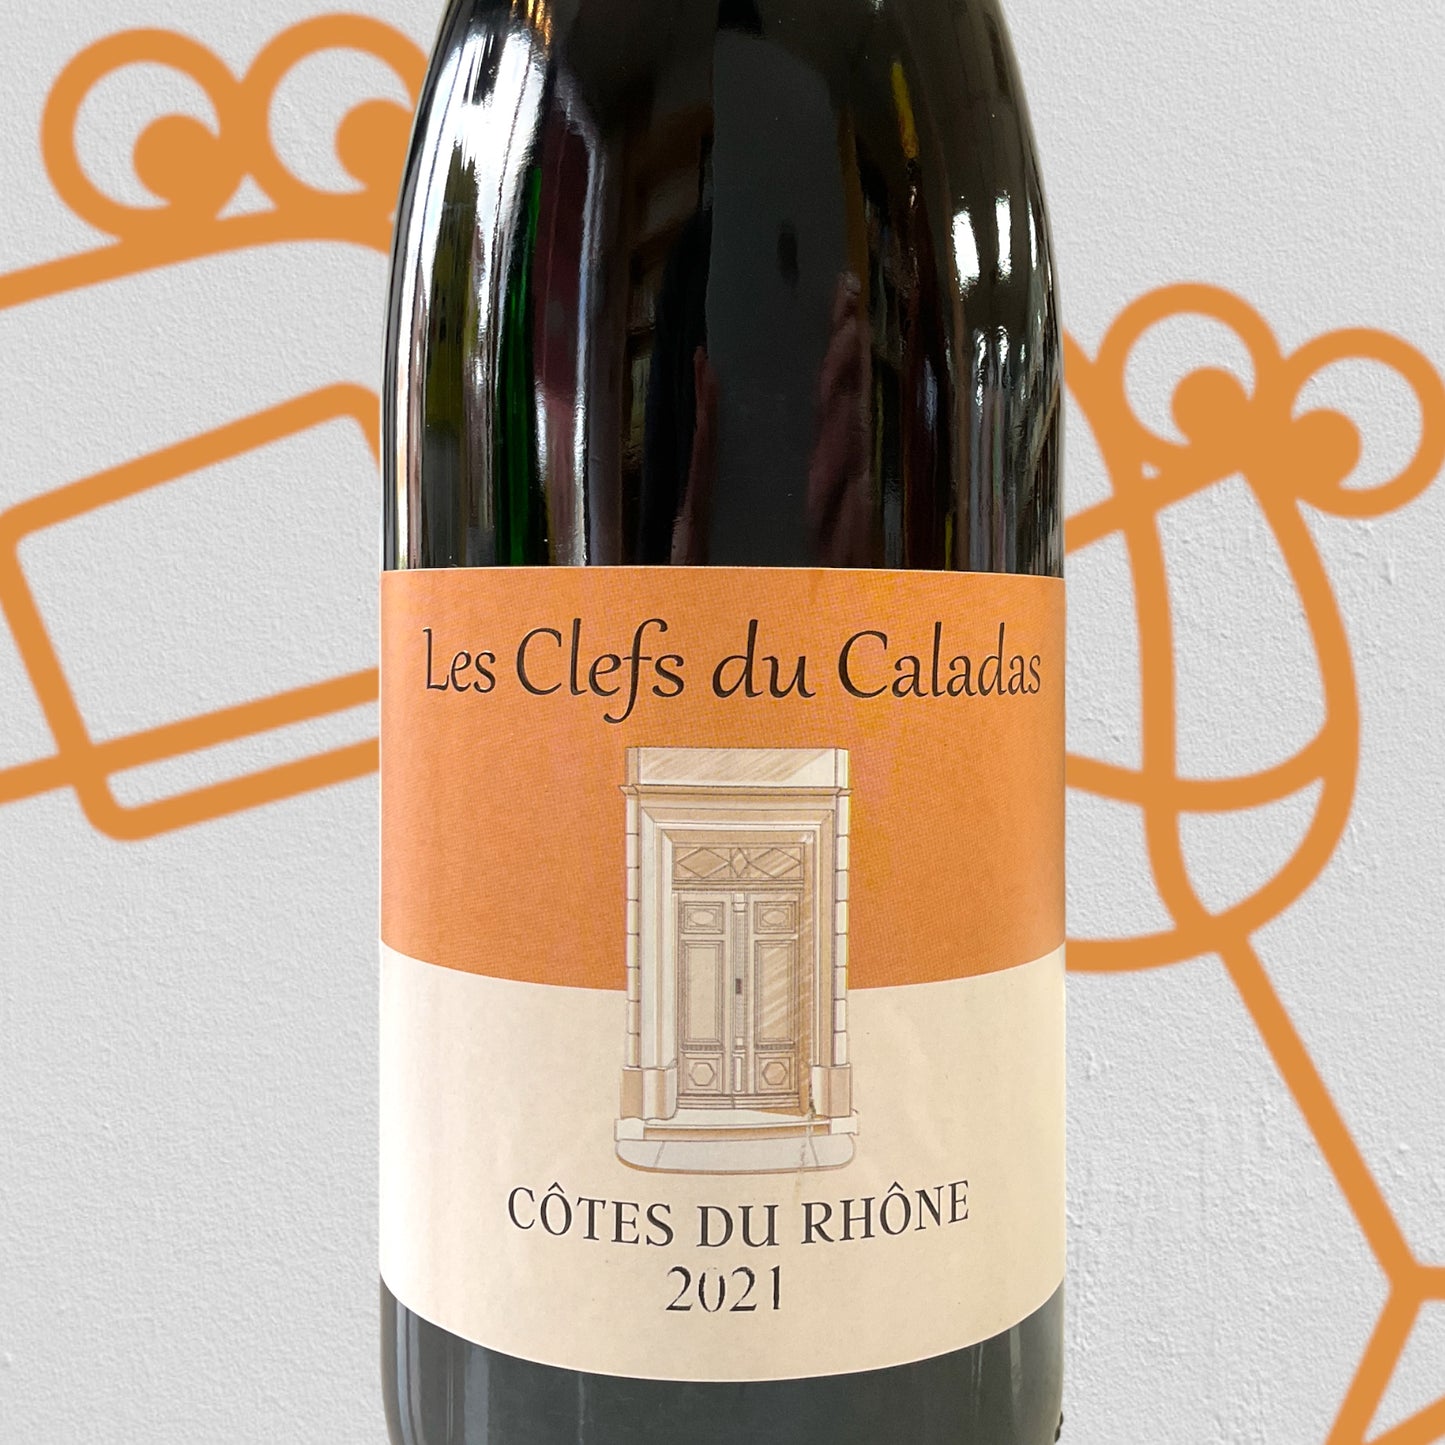 Clefs du Caladas Cotes du Rhone 2021 Rhone Valley, France - Williston Park Wines & Spirits